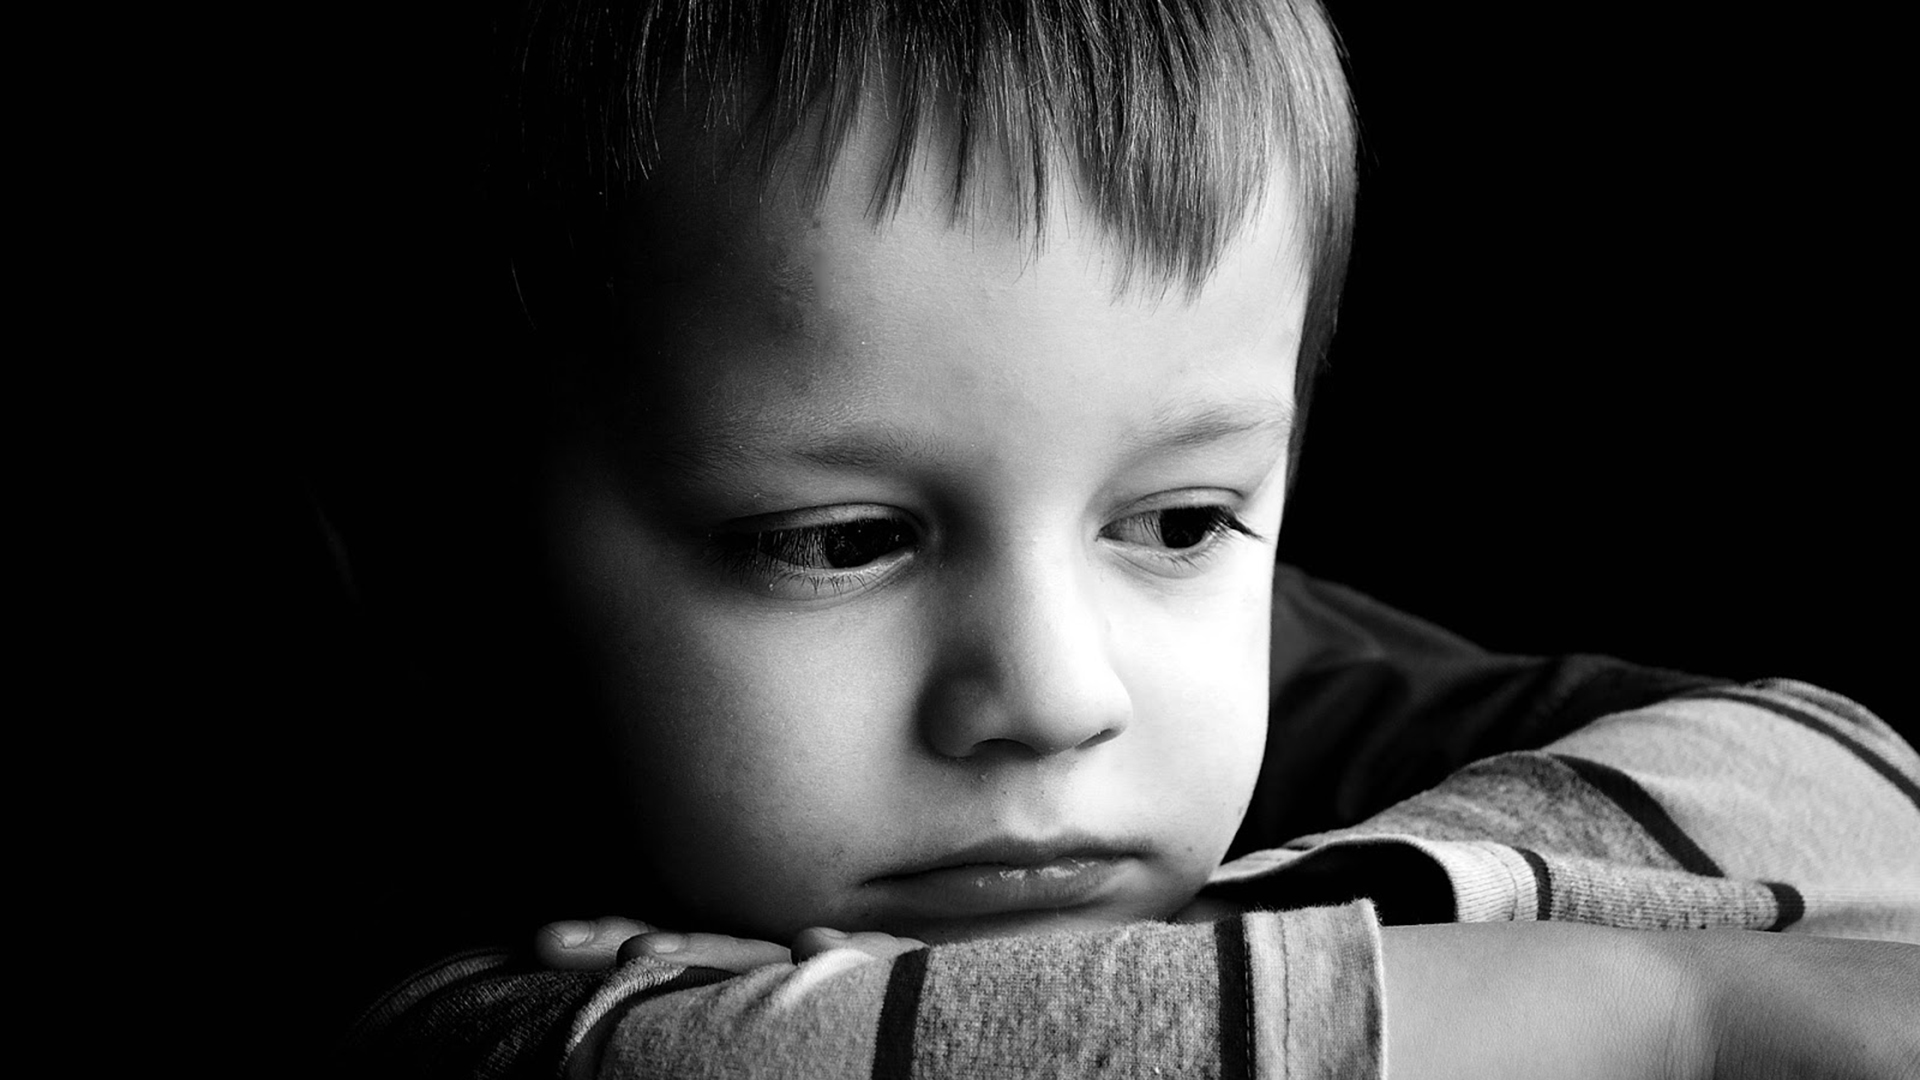 La depresión es un trastorno del estado de ánimo que afecta tanto a niños como a adultos